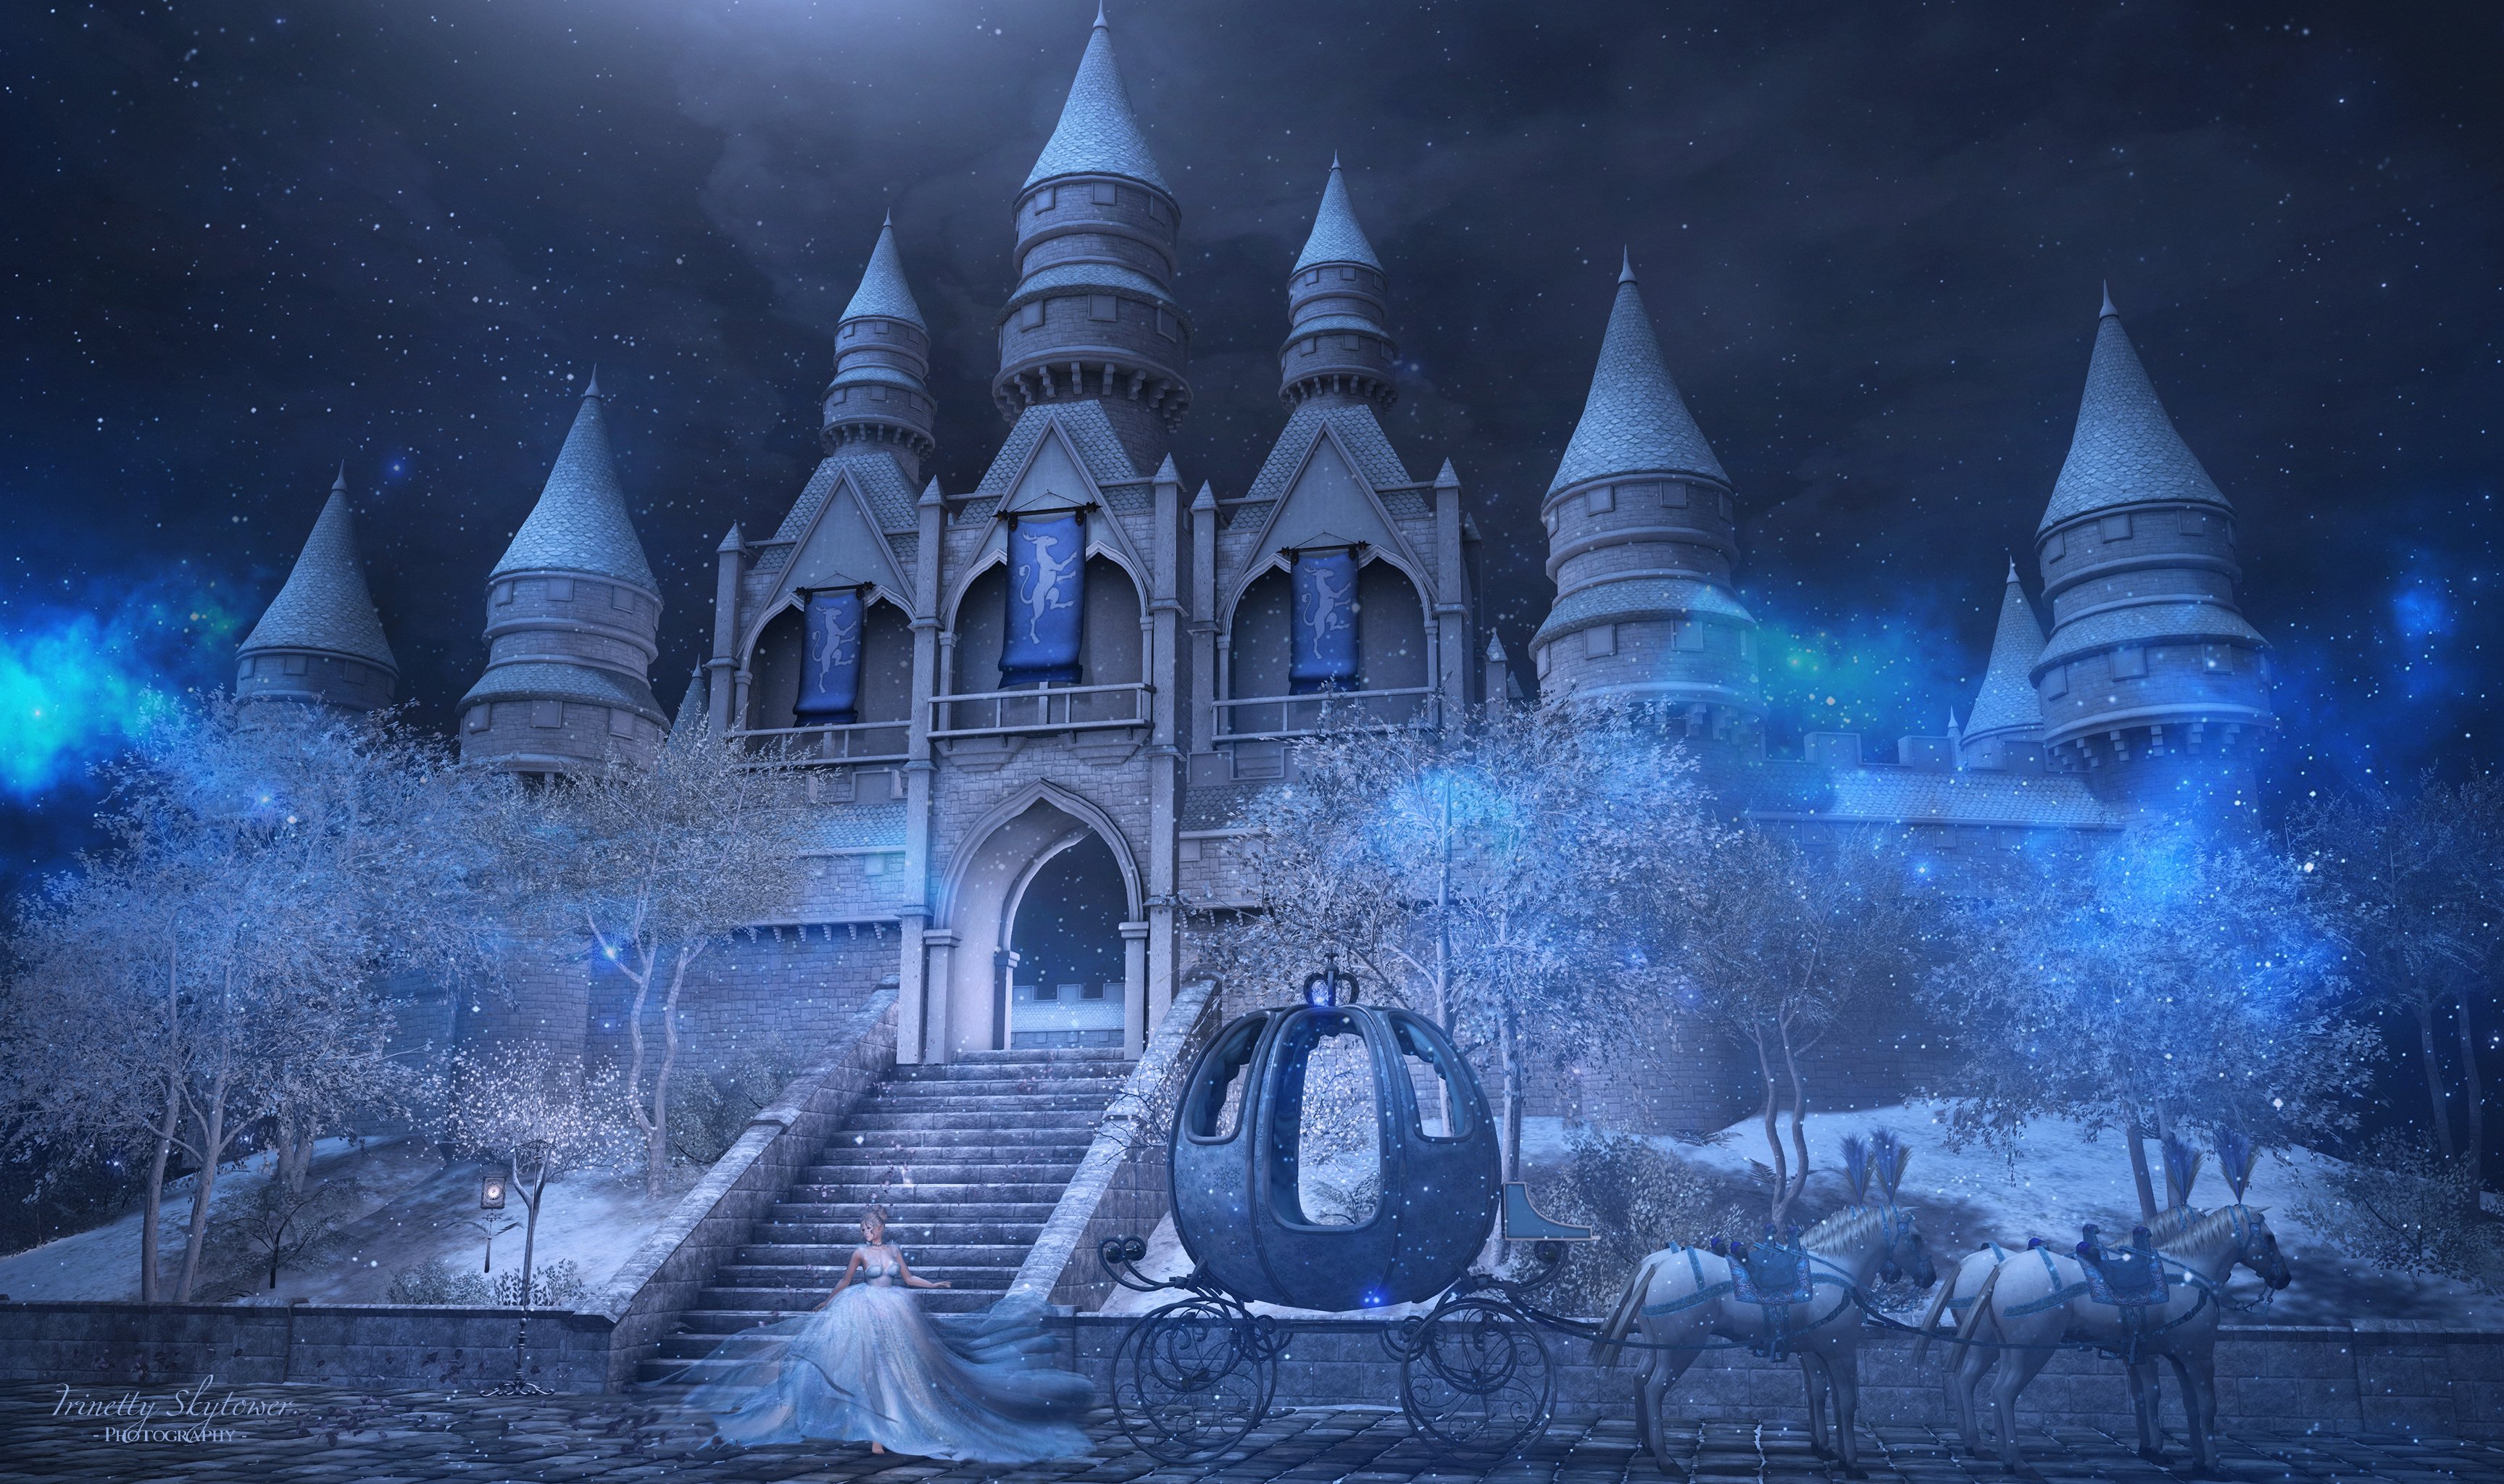 Королевство волшебных фей зимний дворец Дисней